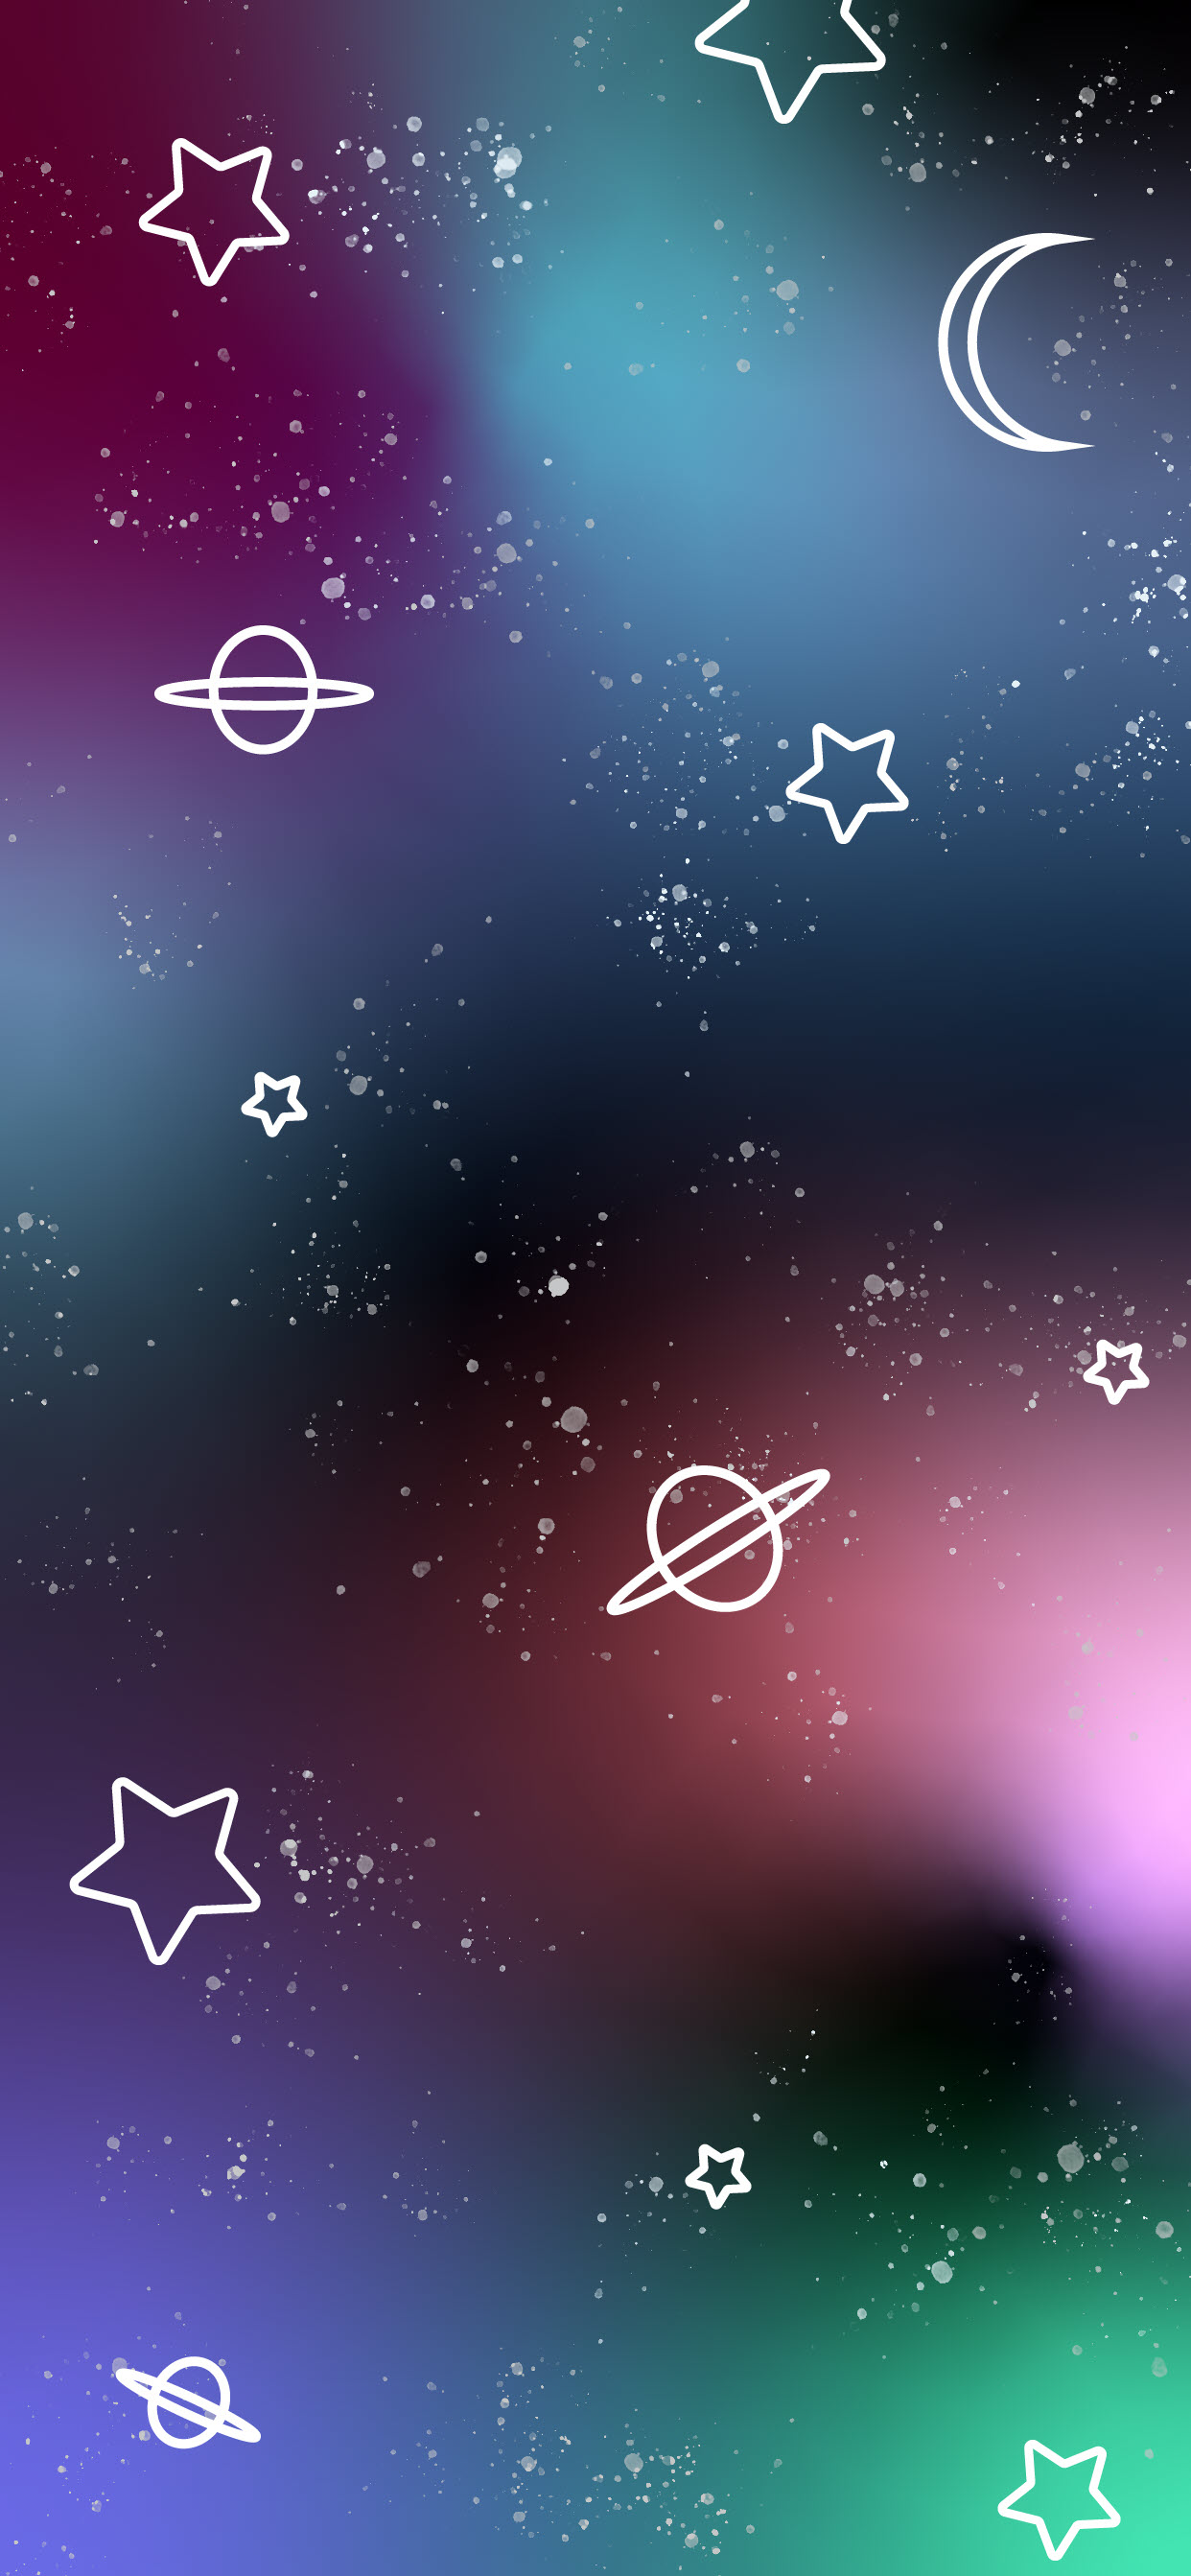 Ảnh nền ngoài hành tinh xinh tươi cho tới iPhone X